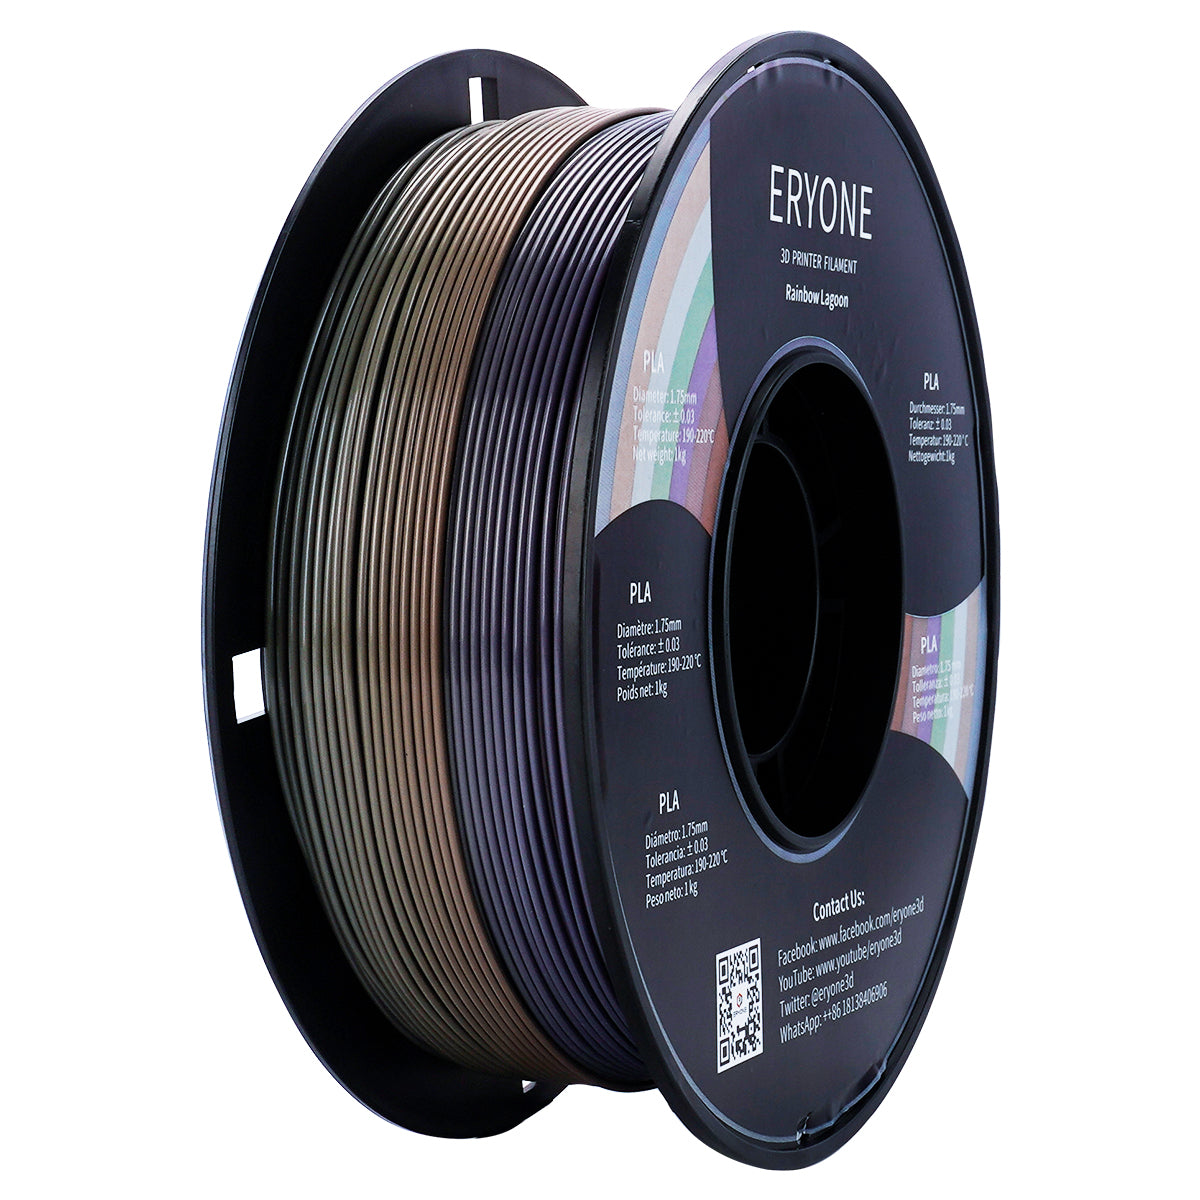 ERYONE Rainbow Filament PLA 1.75mm Filament for 3D Printer 1kg /Spool